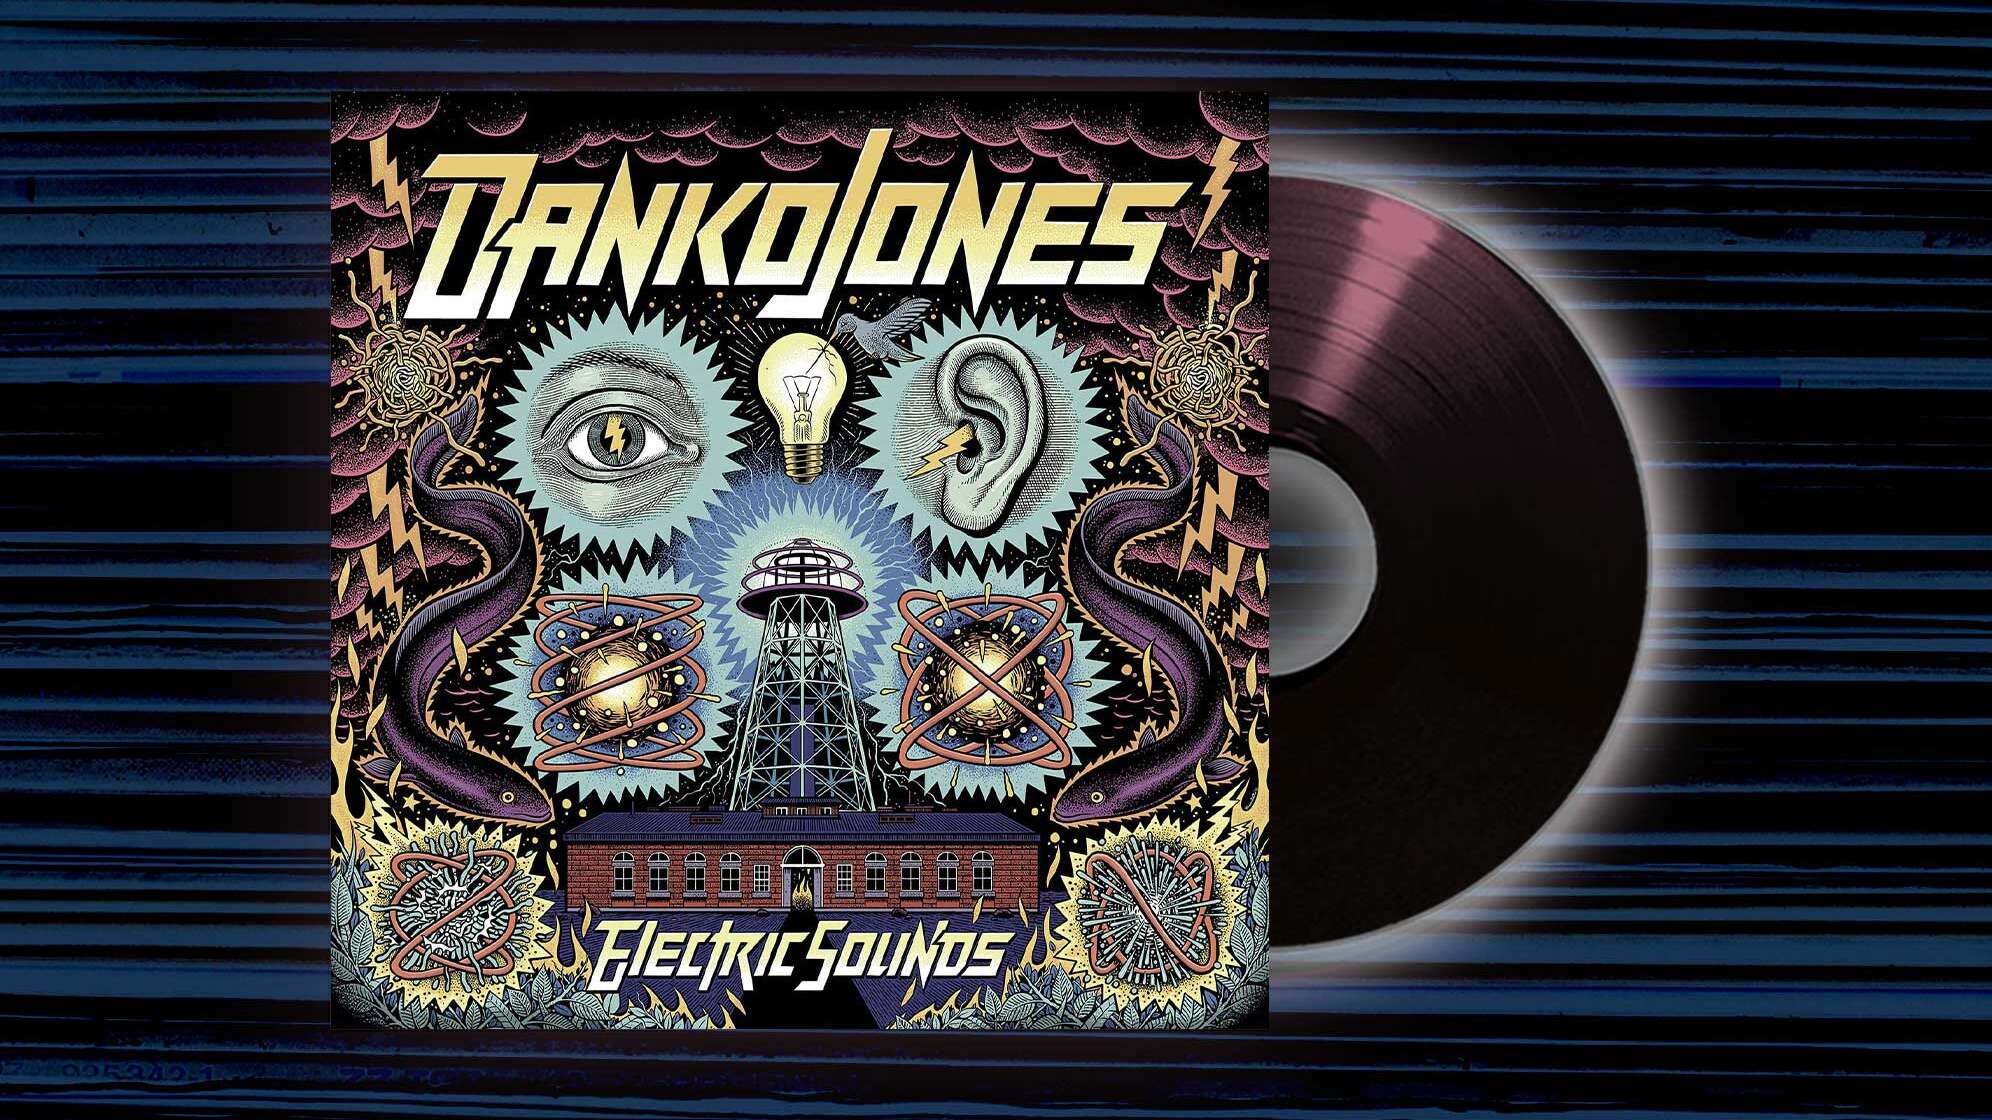 Das Albumcover von "Electric Sounds" von Danko Jones